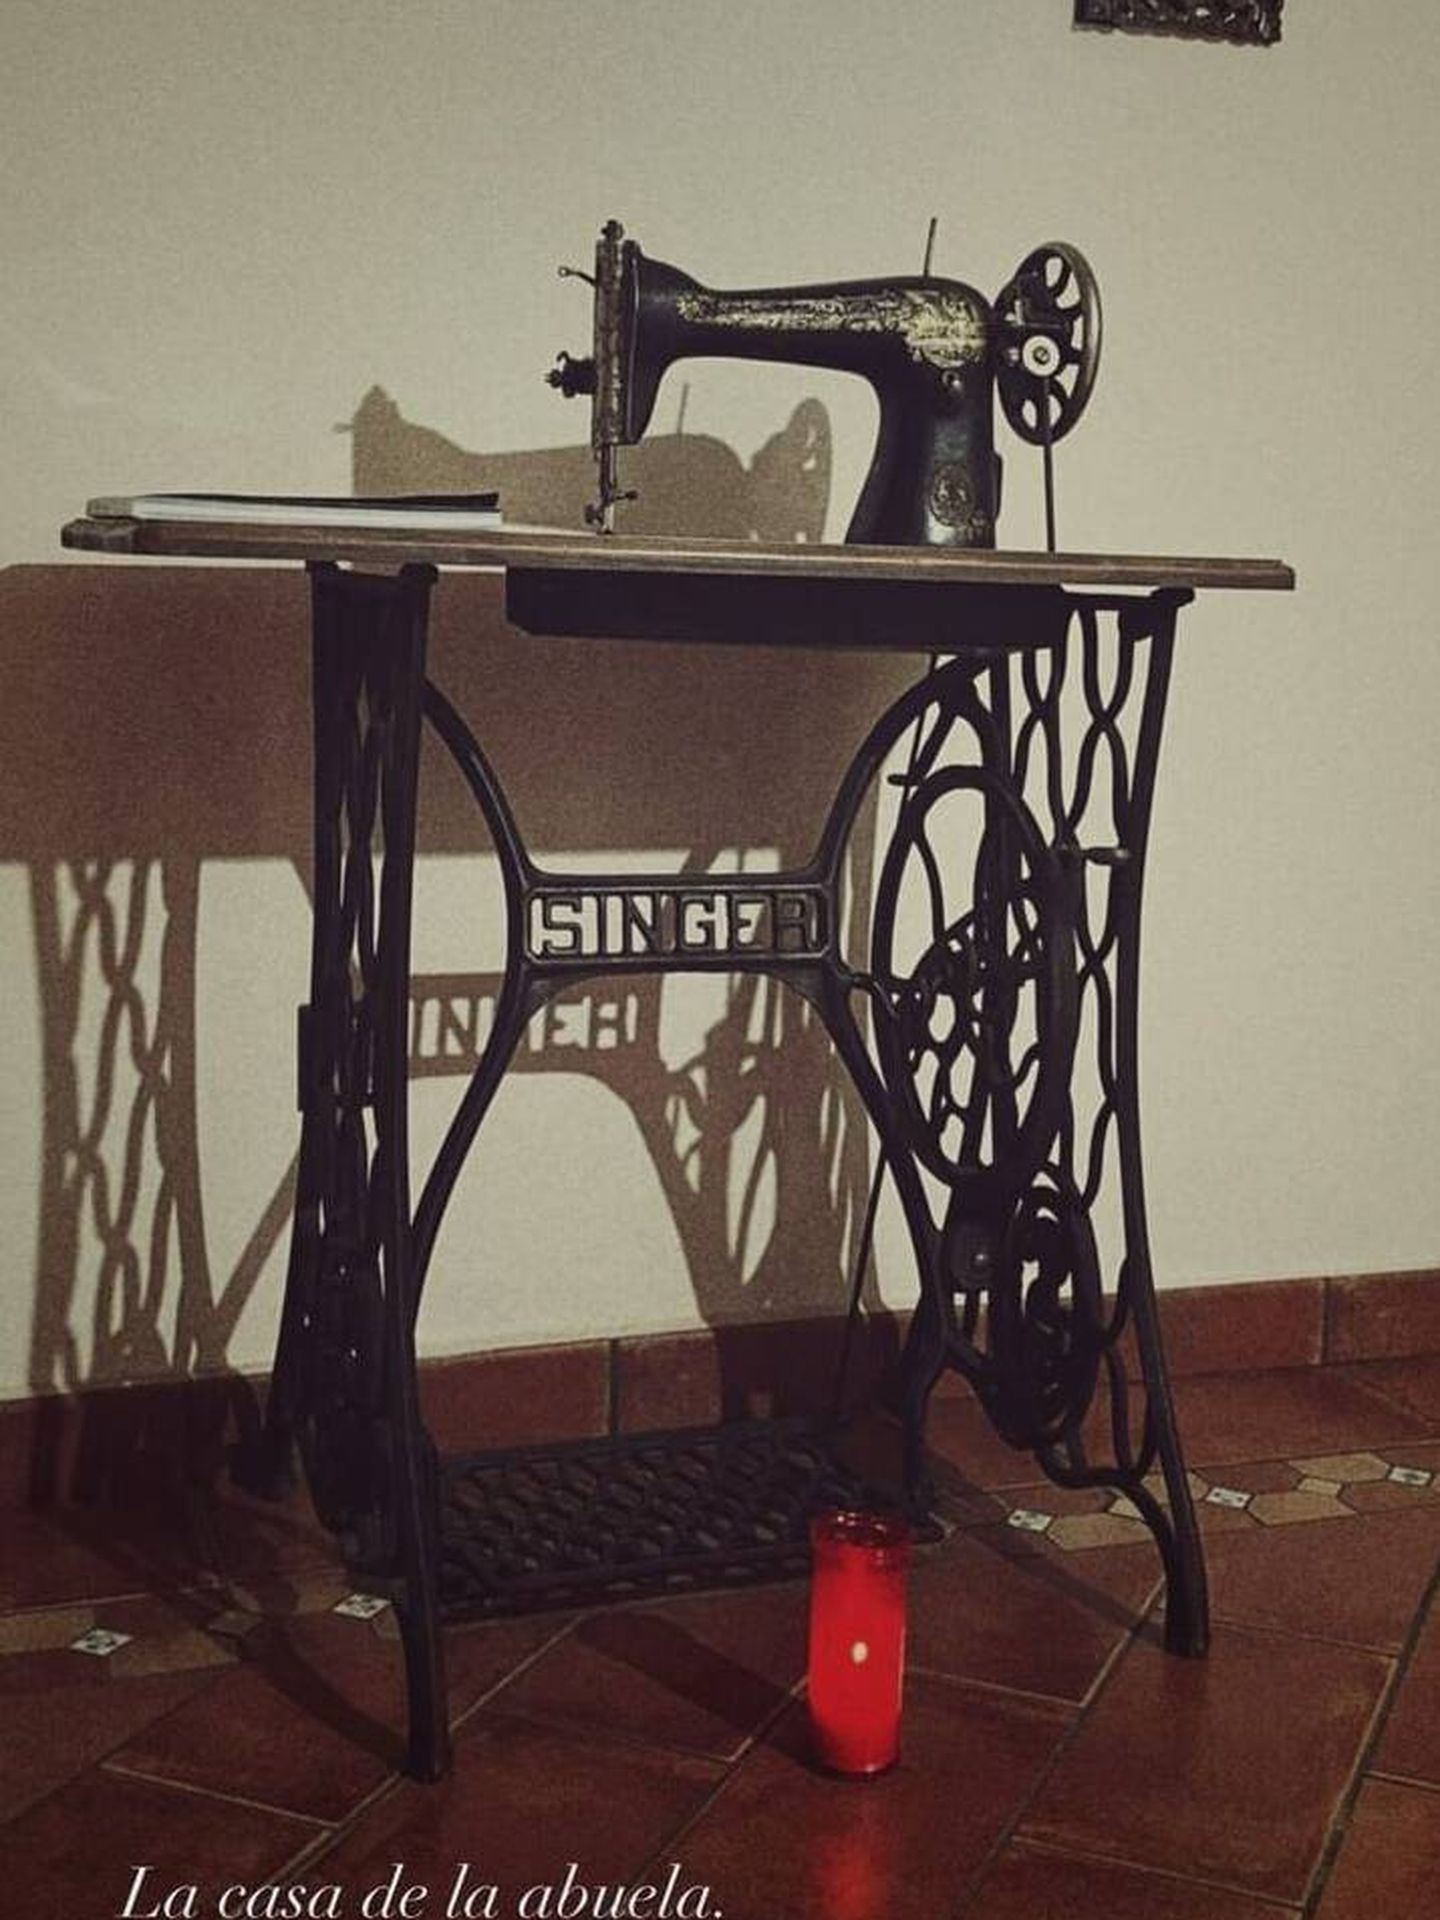 La máquina de coser de la abuela de Sara Carbonero. (Redes)